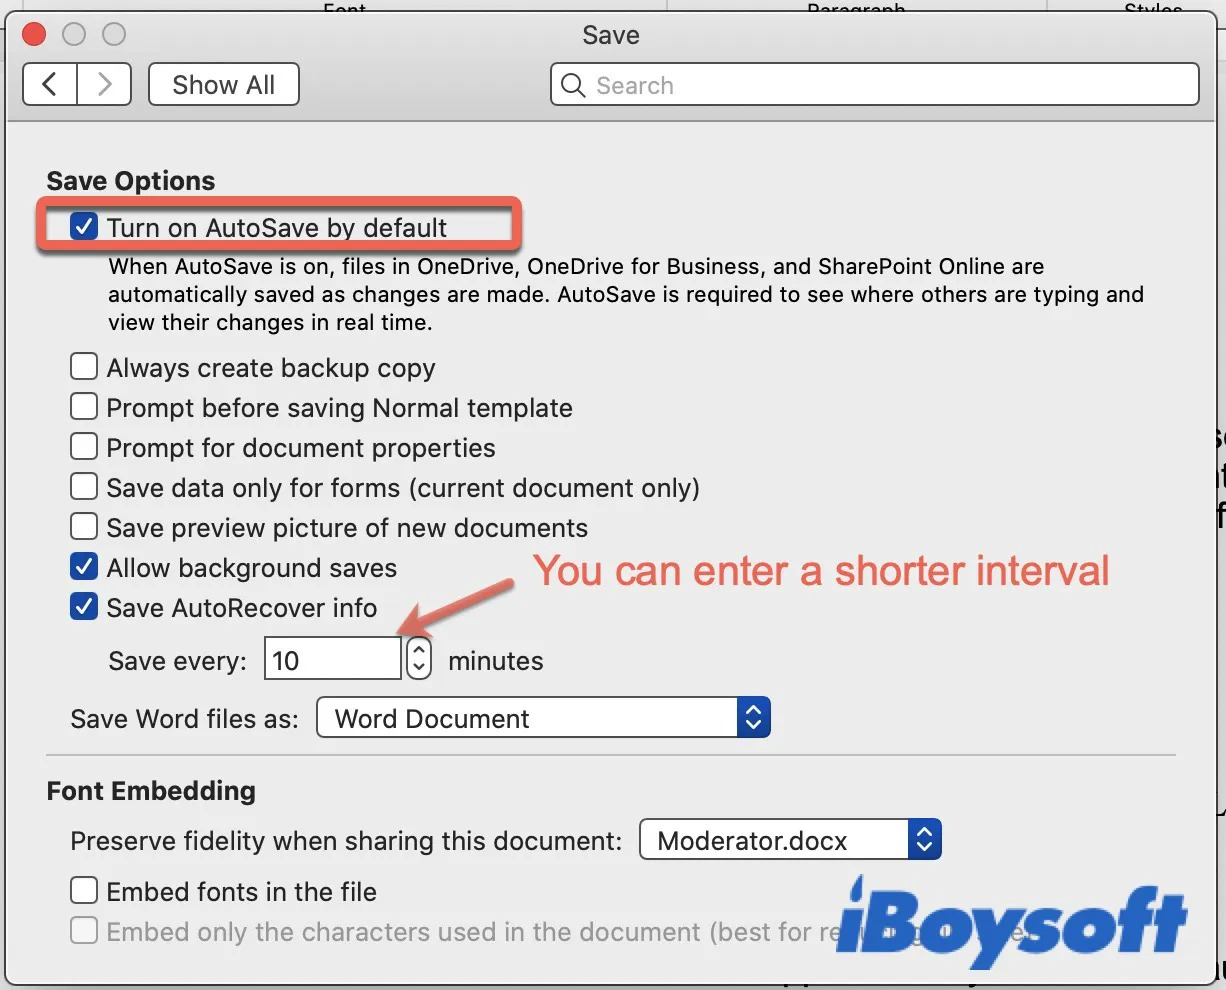 iBoySoft save options